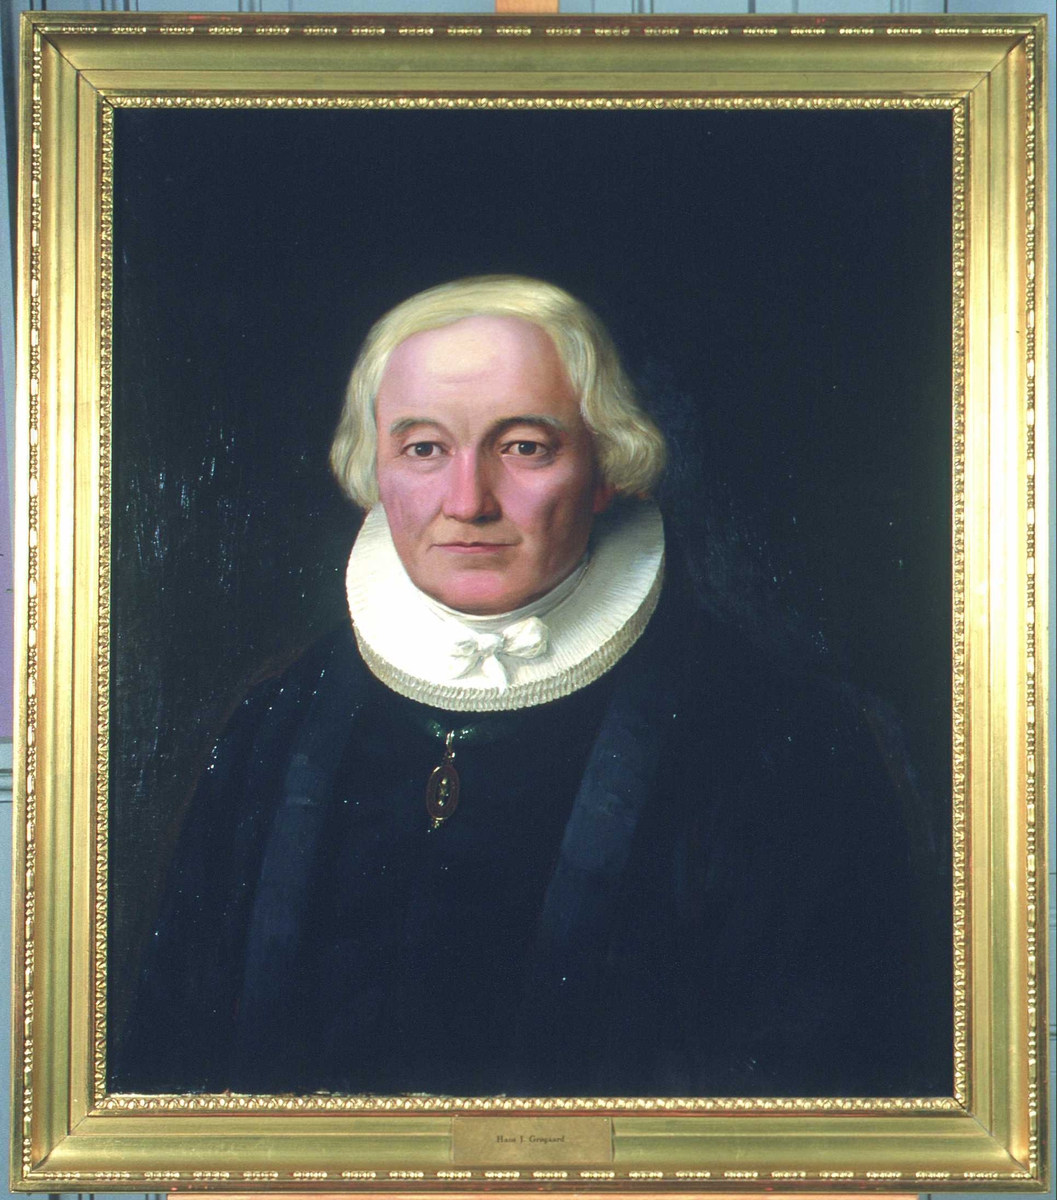 Portrett av Grøgaard (Grøgård). Prestekjole og -krave. Medalje i grønt bånd om halsen.